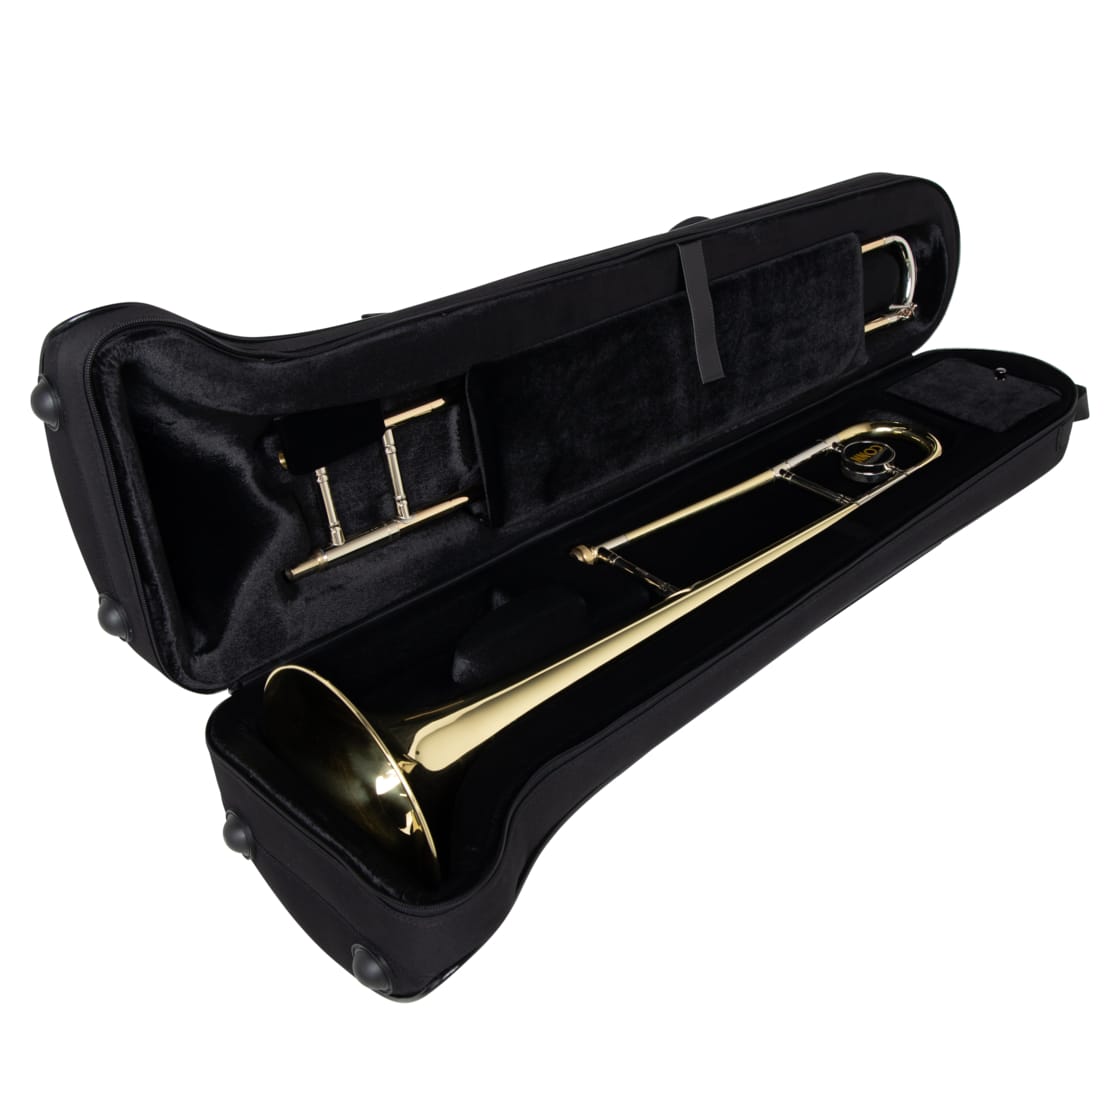 Lightweight Beginner Case for Trombone